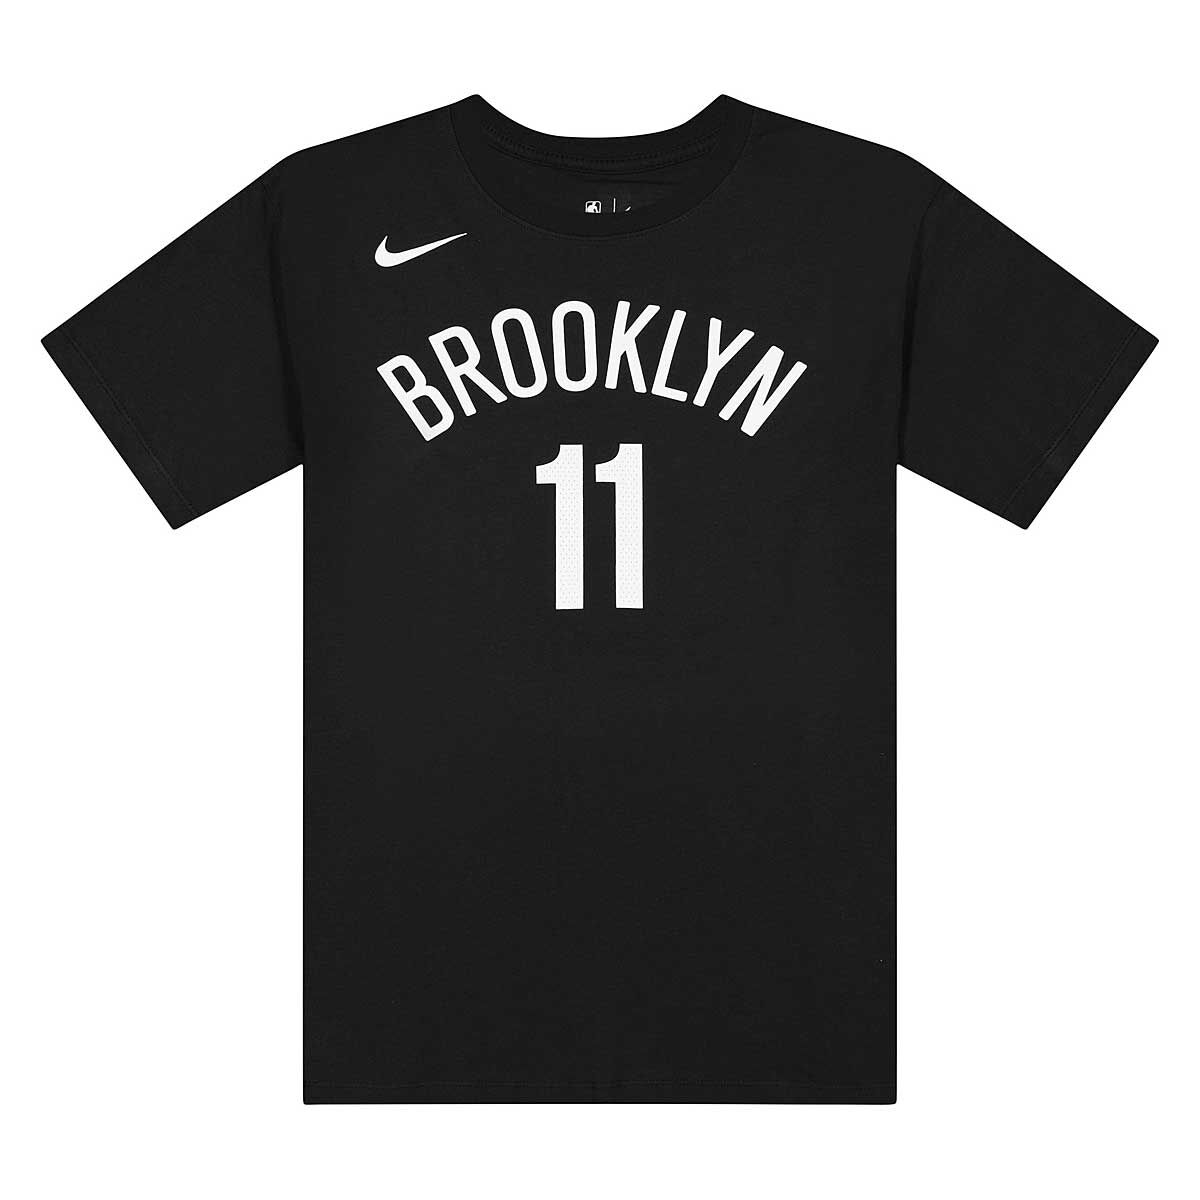 Buy NBA BROOKLYN NETS KYRIE IRVING T-SHIRT NN for N/A 0.0 on KICKZ.com!